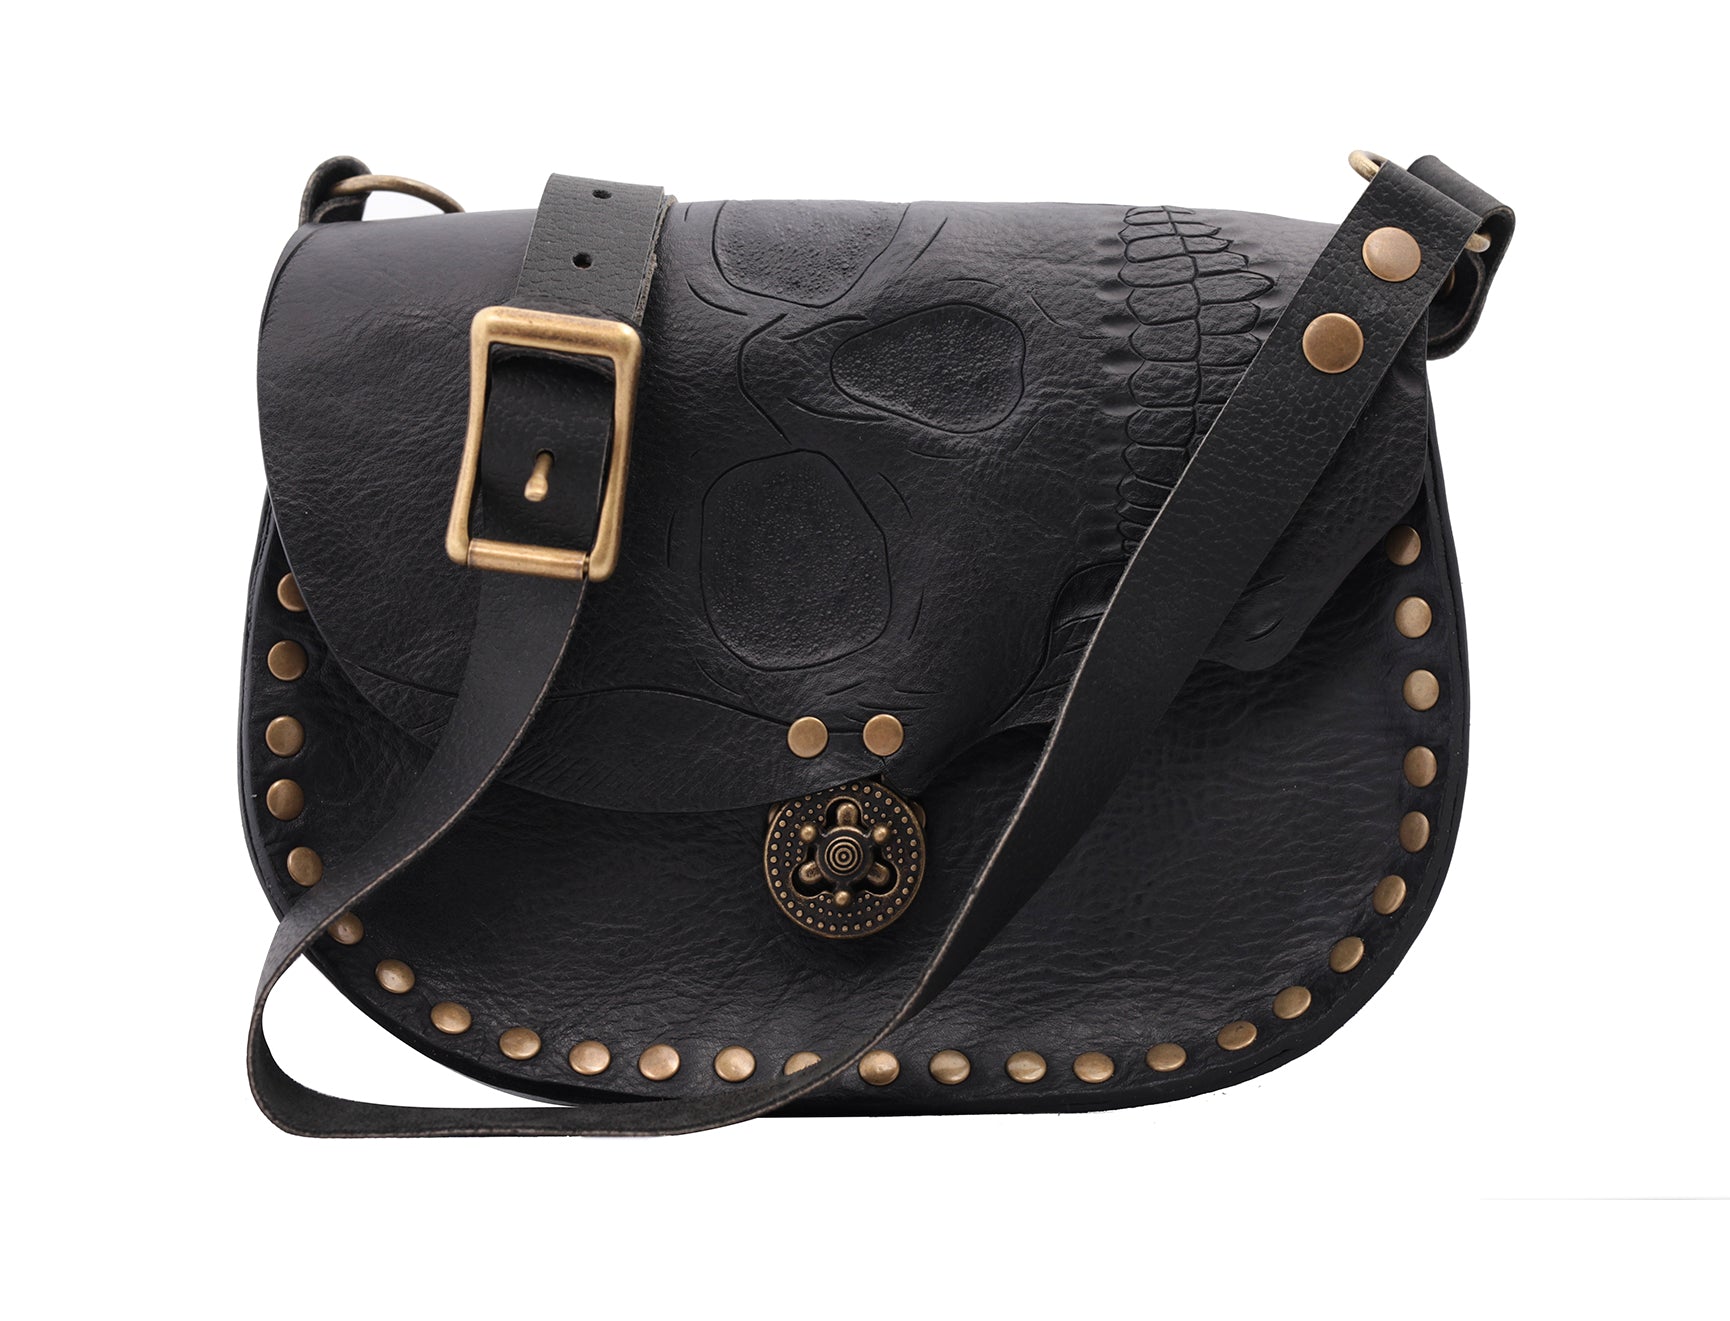 Fashion Women Handbag Skull | Day Dead Handbags | Skull Bag Womens Handbag  - Tote Bags - Aliexpress